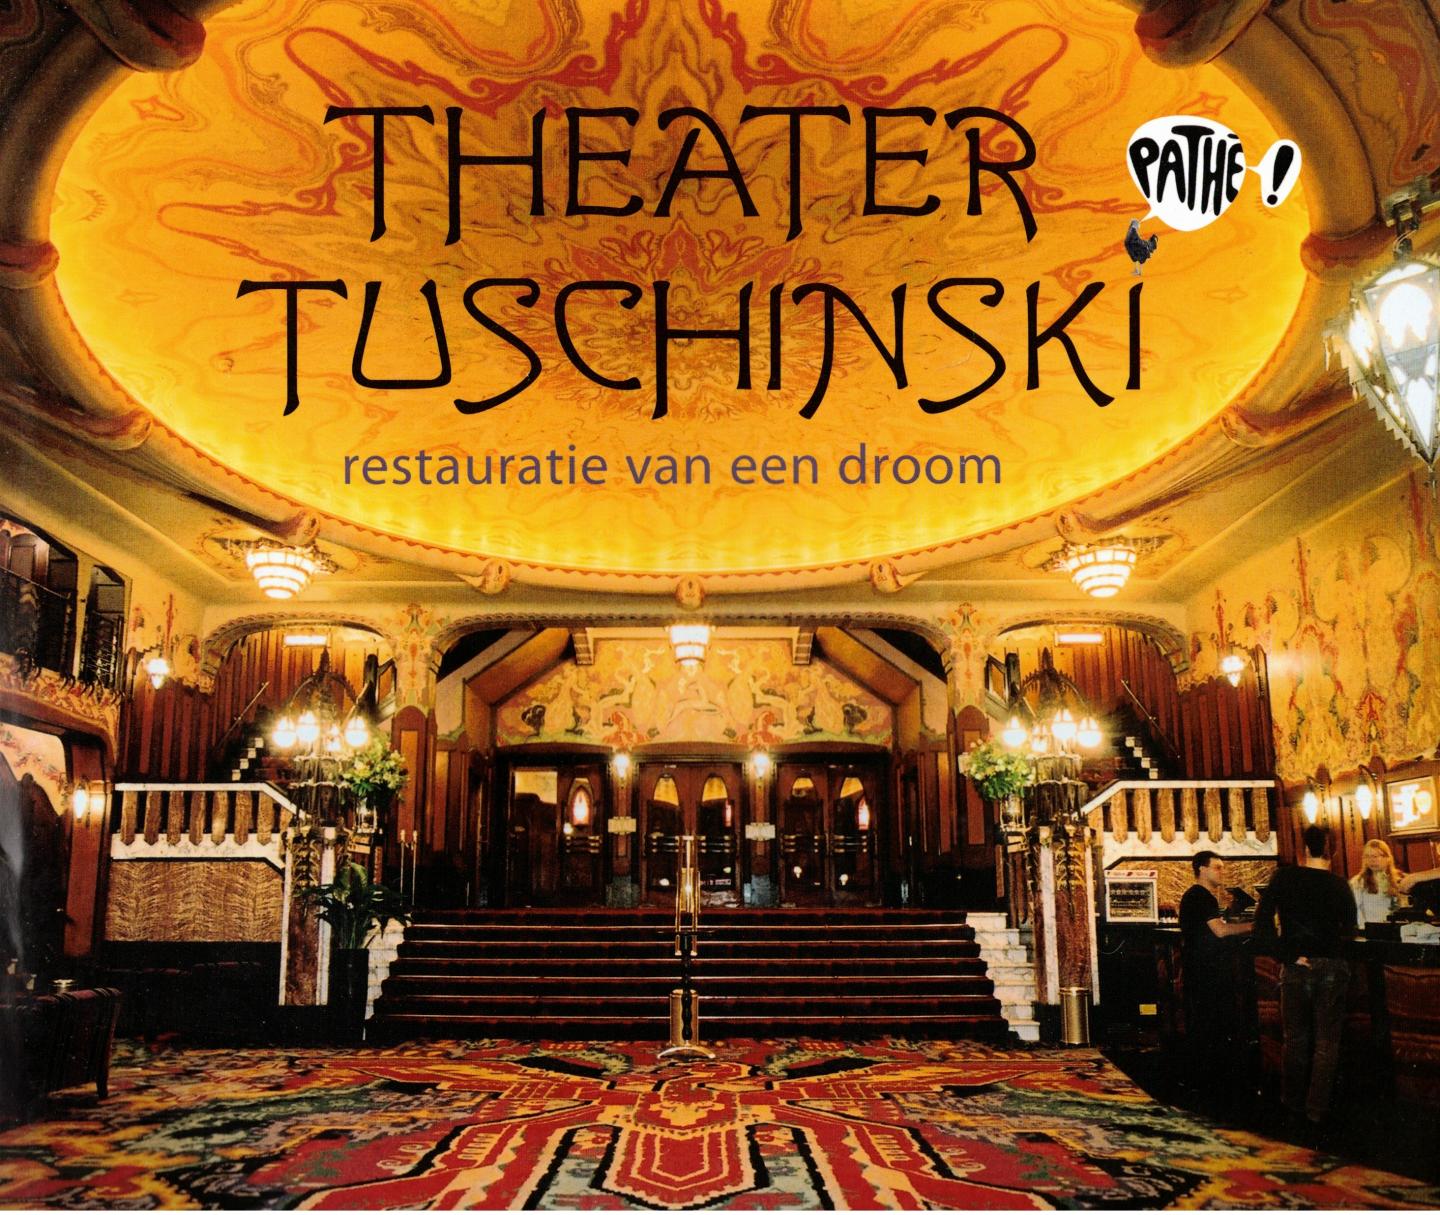 Tonkens, Susanne - Theater Tuschinski / restauratie van een droom / restauration of a dream